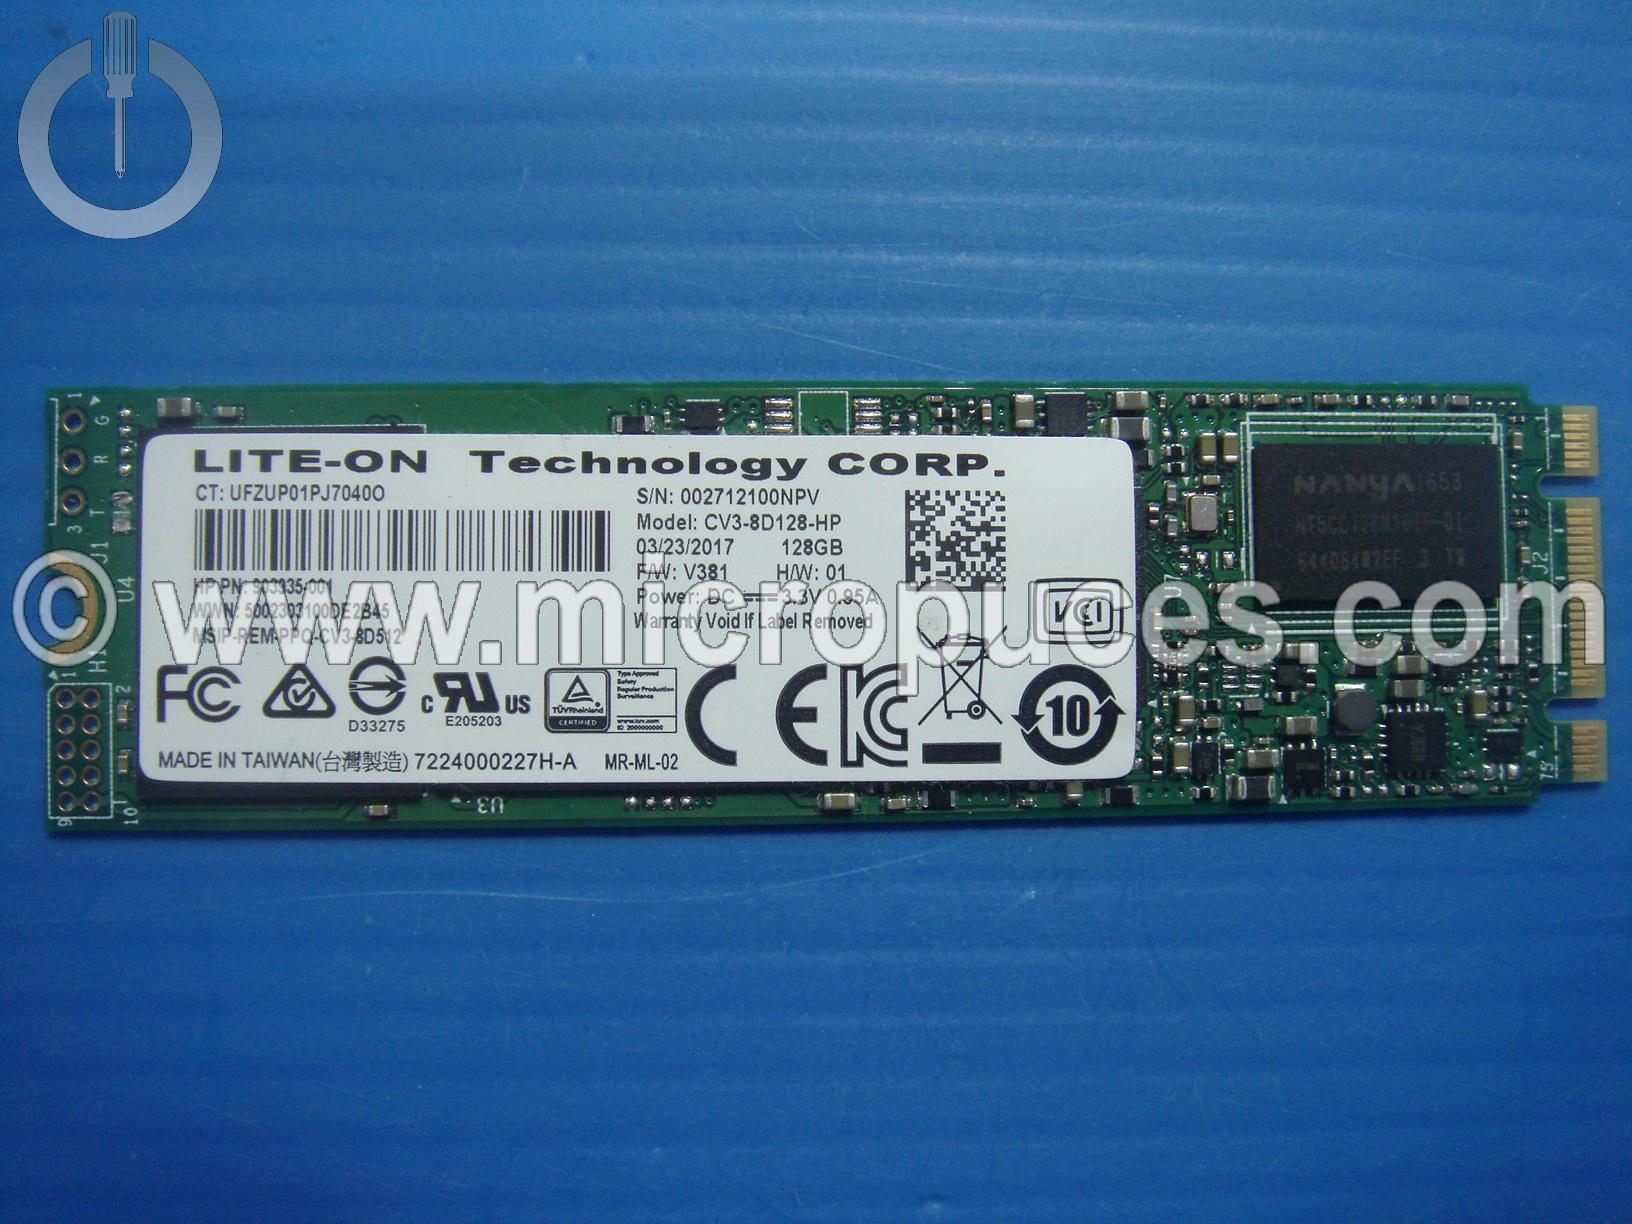 Disque dur SSD 128GB CV3-8D128-HP